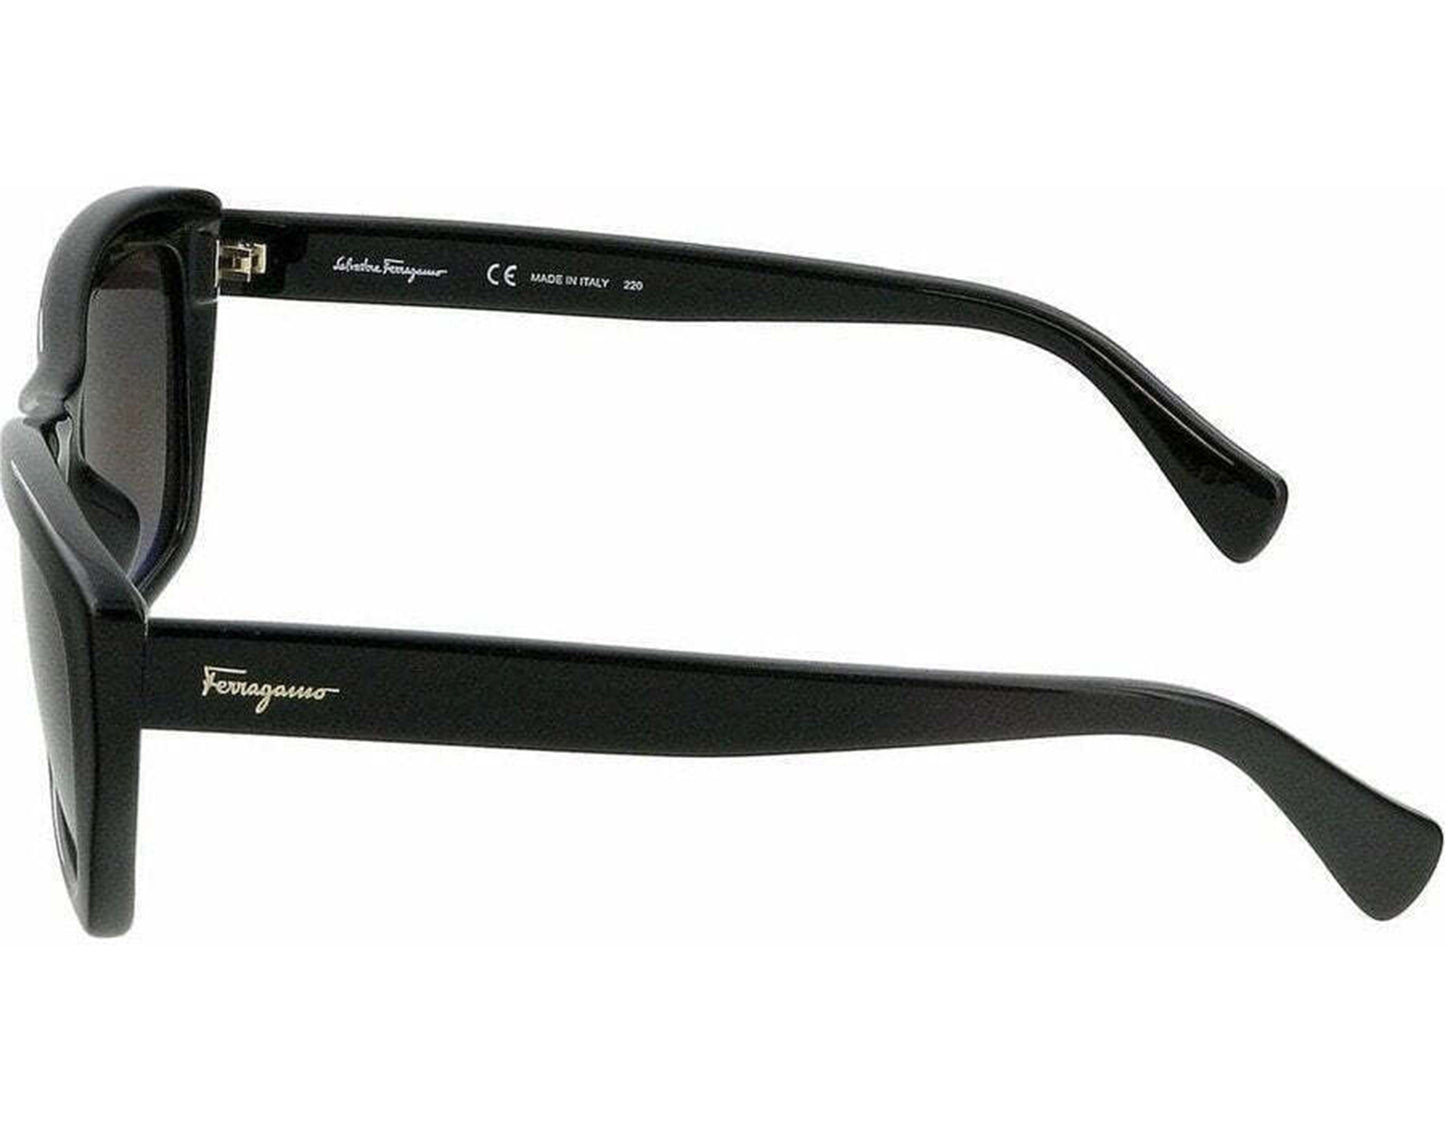 Salvatore Ferragamo SF958S-001-5519 55mm New Sunglasses